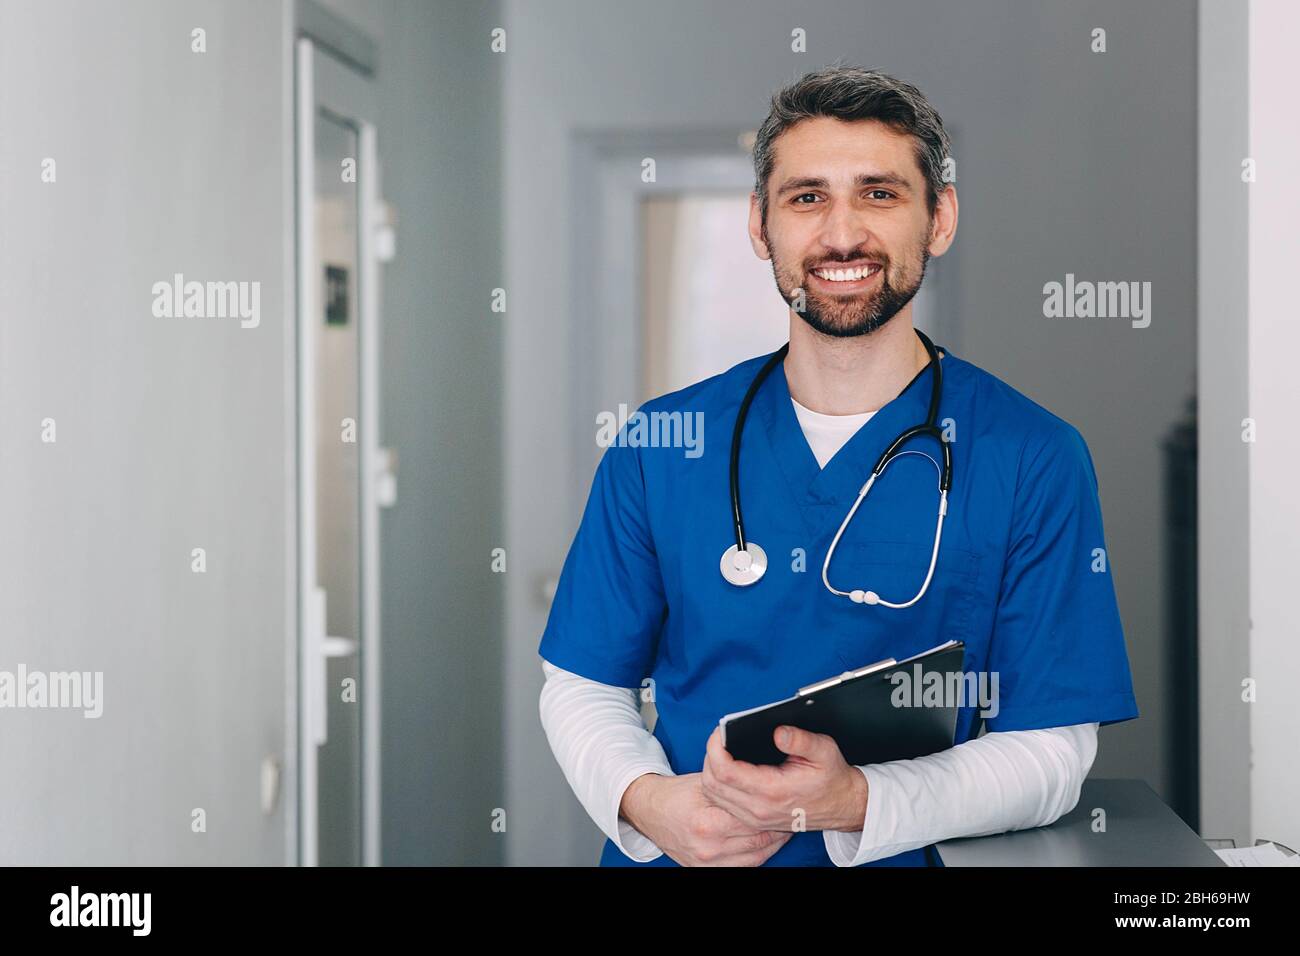 Krankenschwester mit Stethoskop in der Klinik. Er lächelt und schaut auf die Kamera. Stockfoto